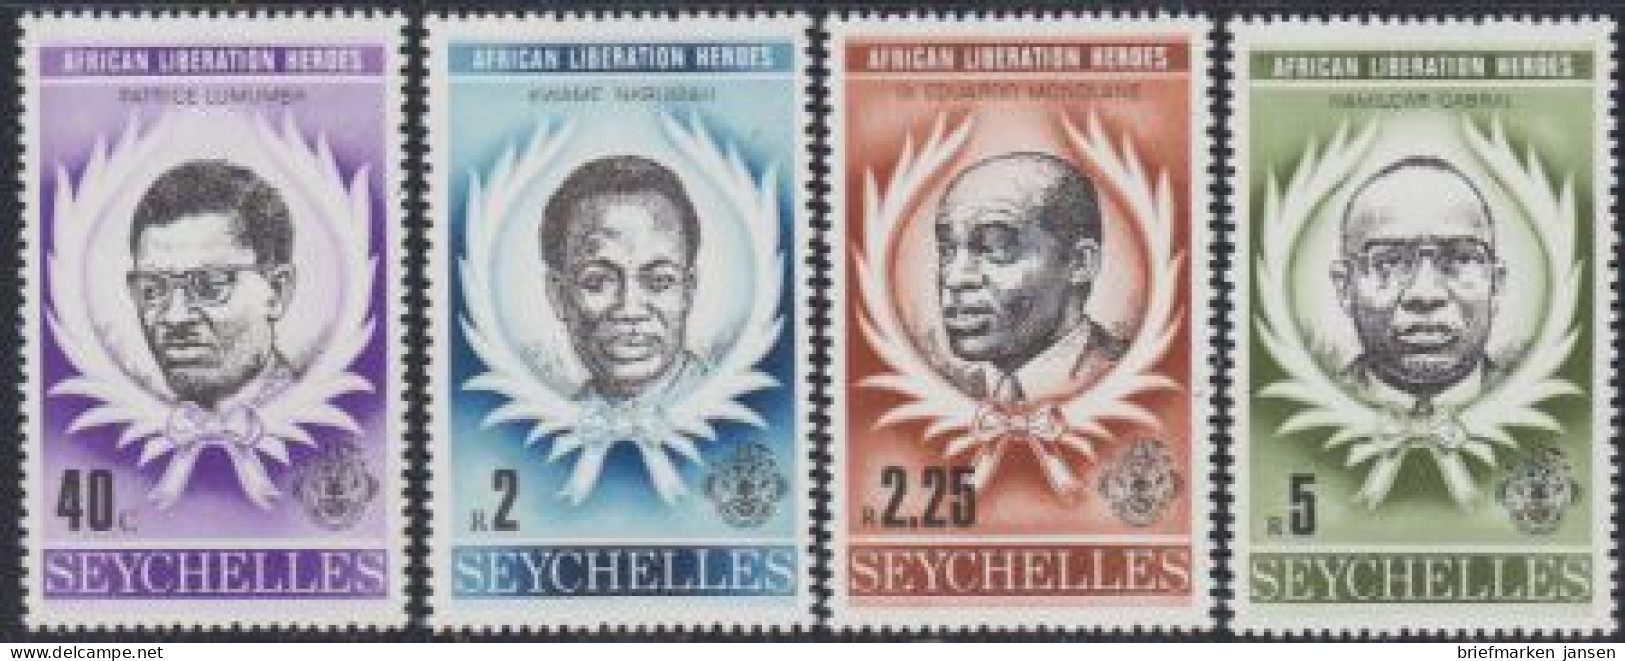 Seychellen Mi.Nr. 435-38 Helden Der Befreiung Afrikas (4 Werte) - Seychelles (1976-...)